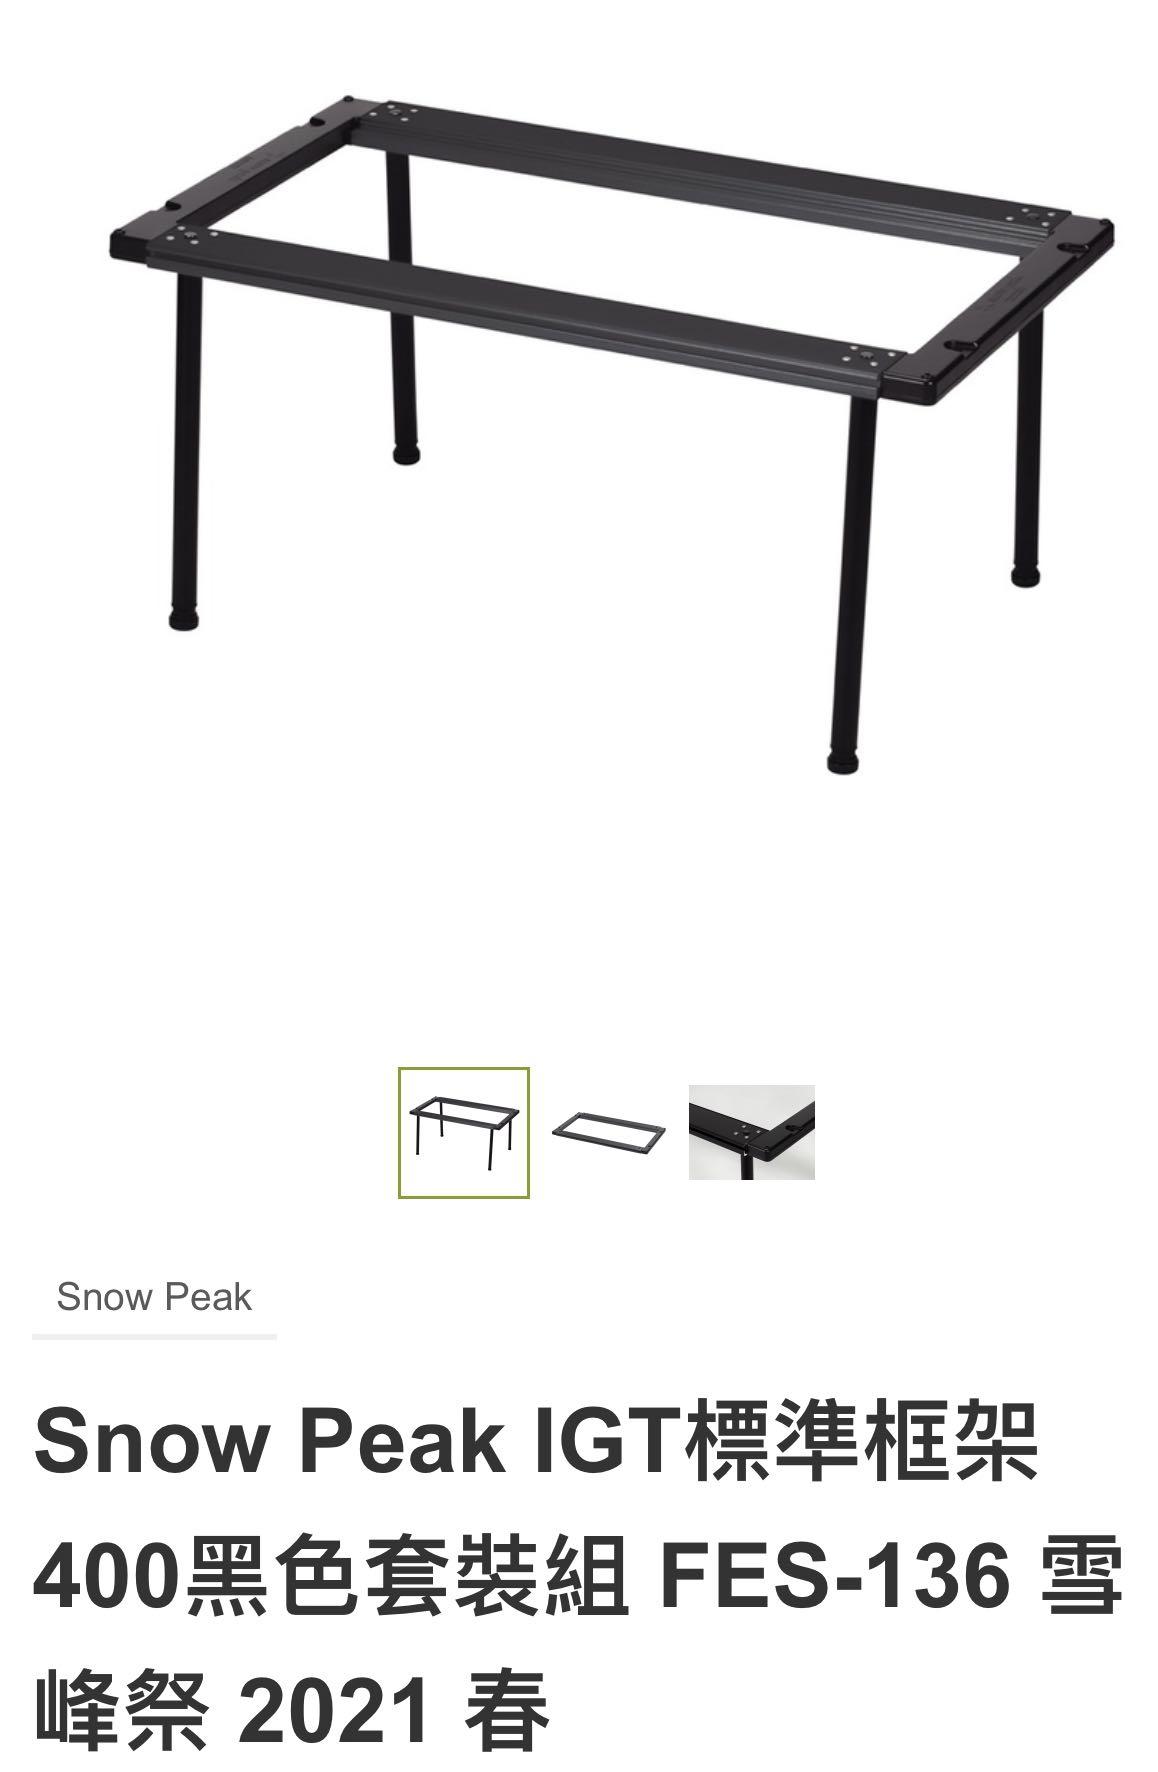 Snow Peak | 🔴賣曬啦🔴 Fes 136✓IGT標準框架400黑色套裝組⭐️雪峰祭 